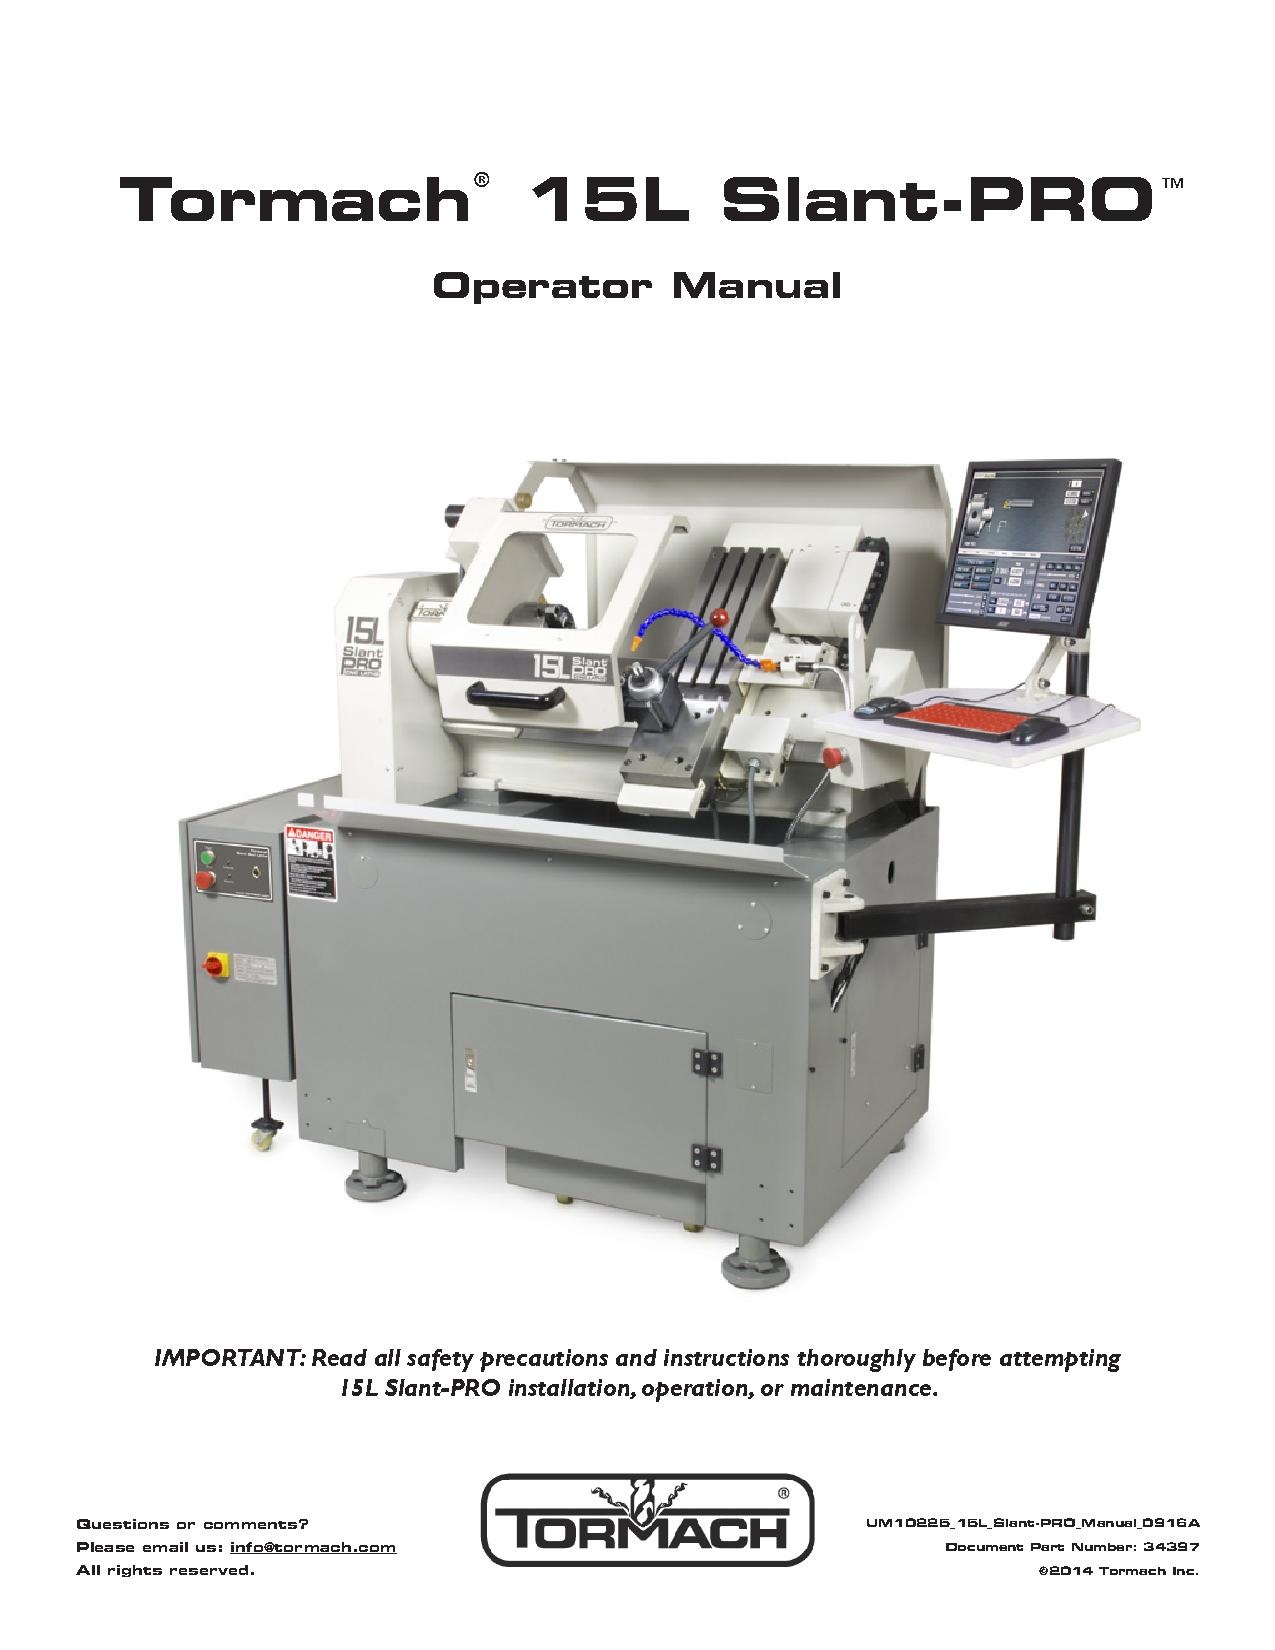 Tormach 15L Slant-PRO CNC Lathe Manual 0916.pdf